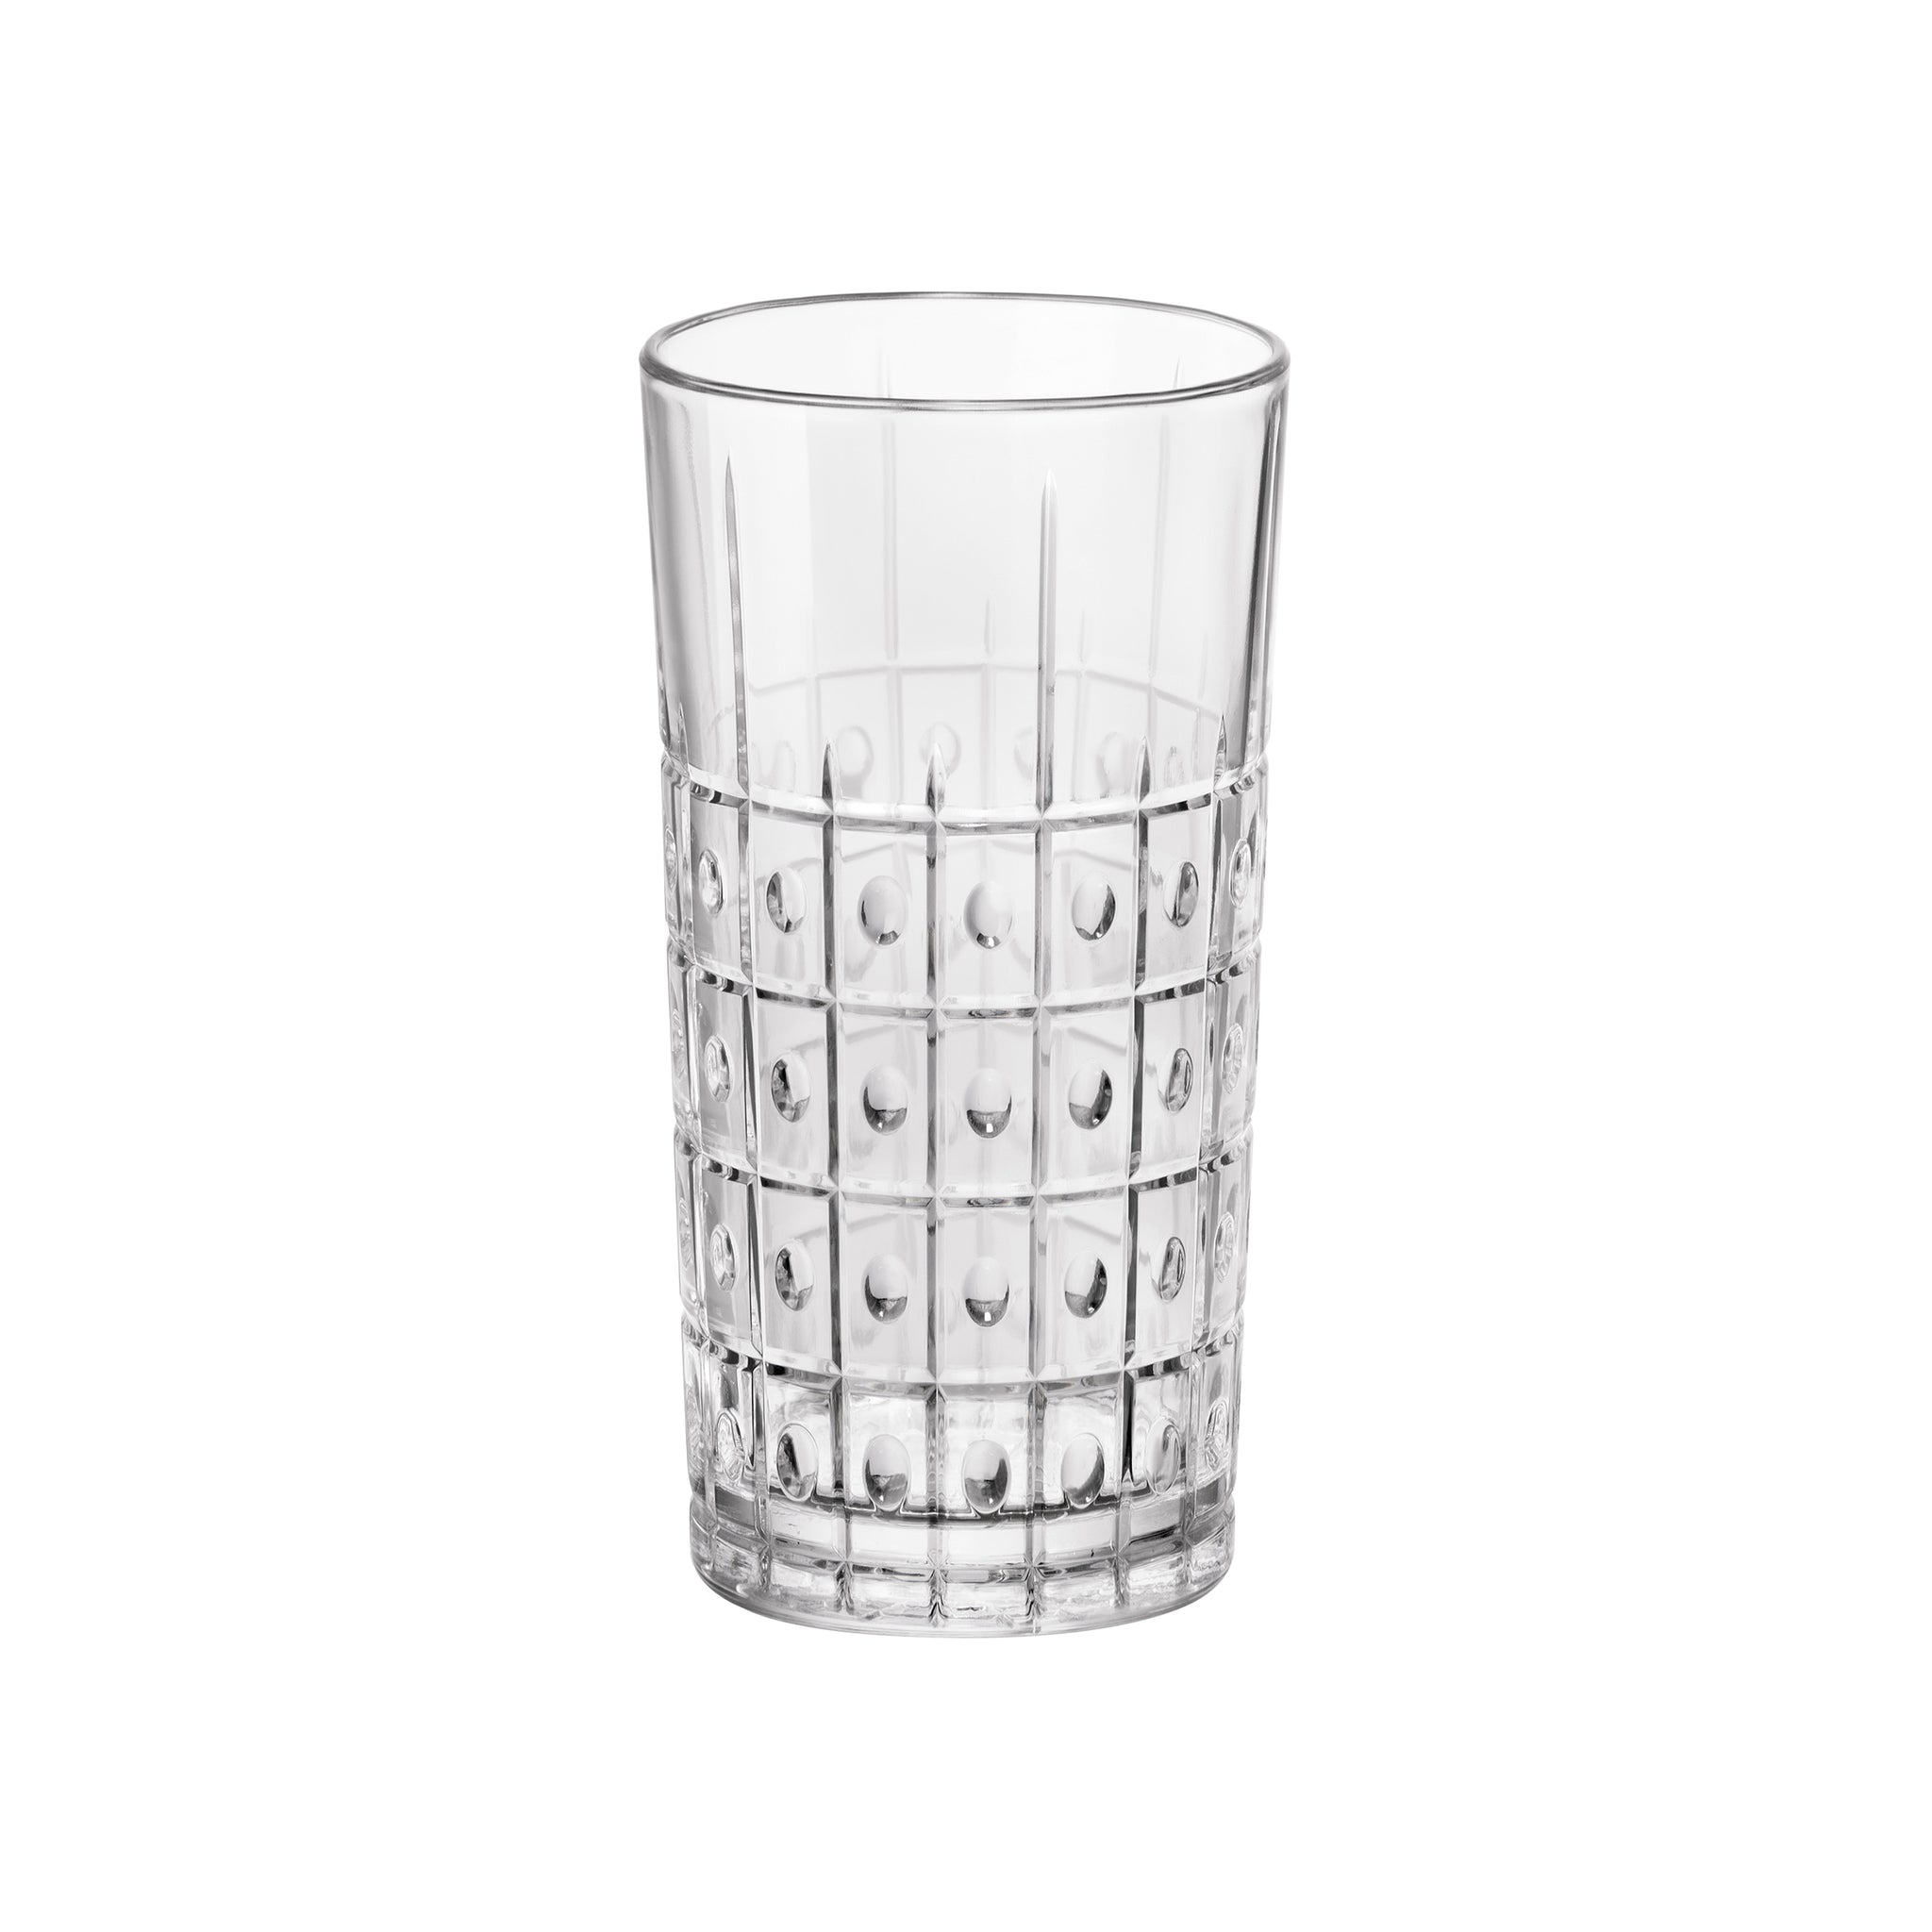 Bartender 10.25 oz. Este Long Drink Drinking Glasses (Set of 4)